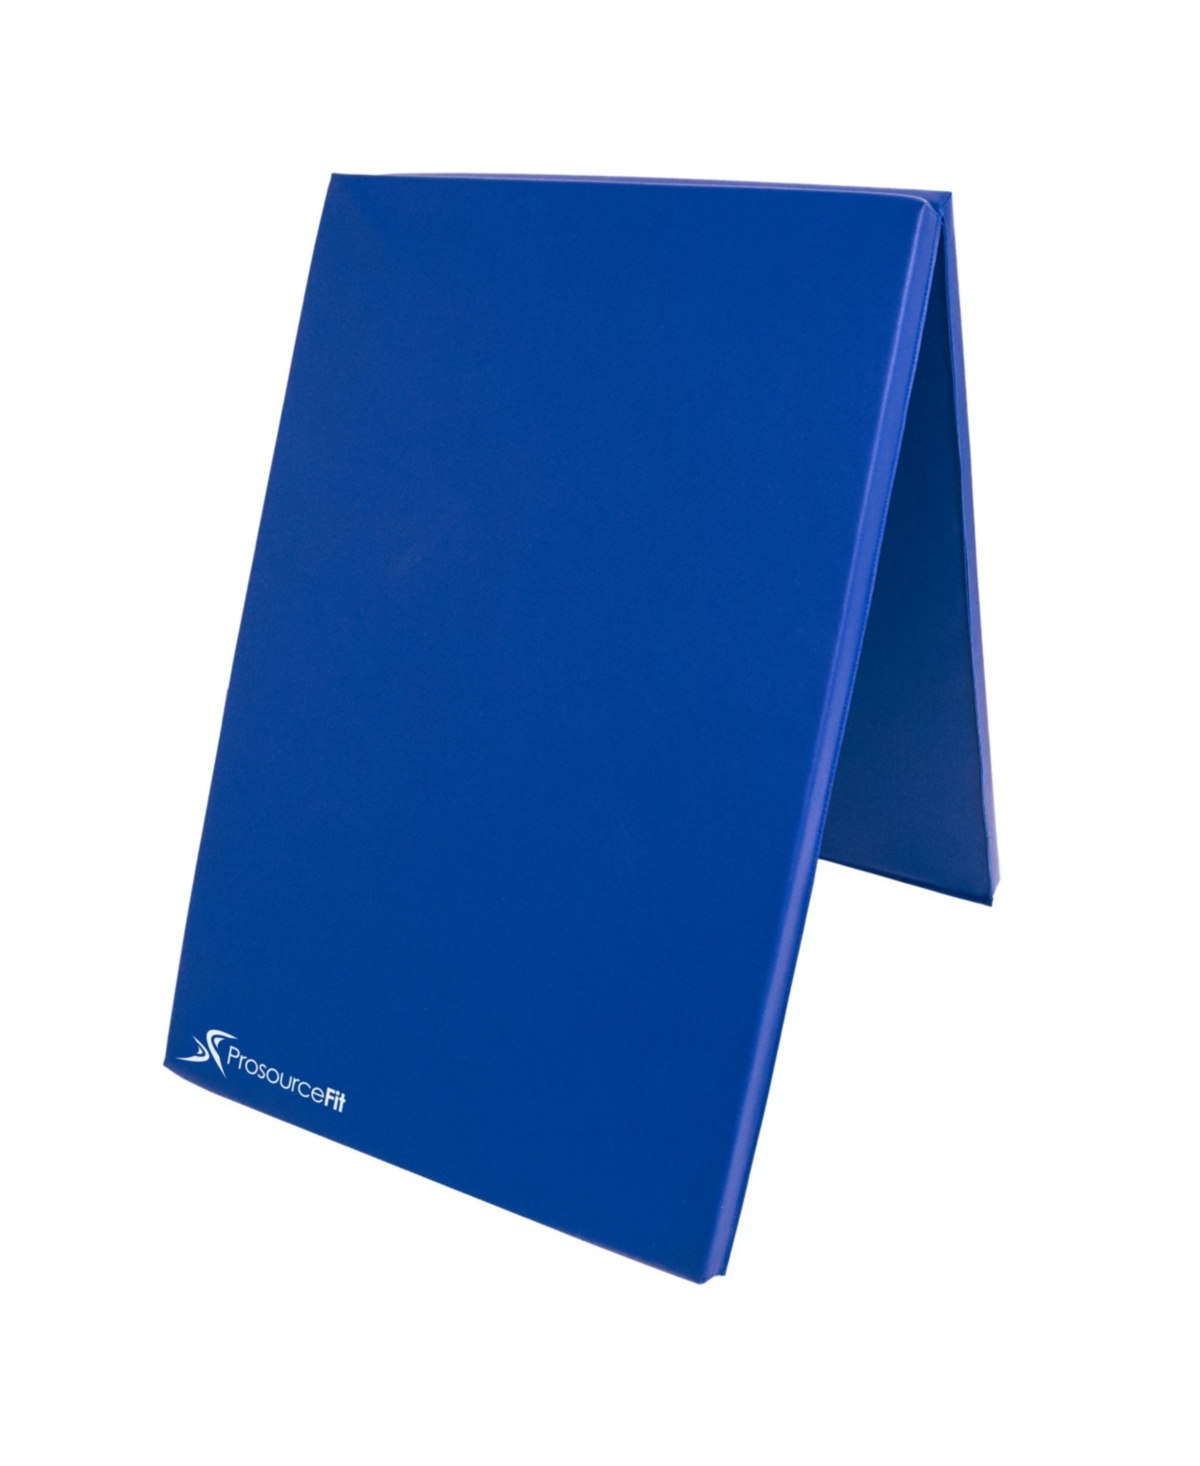 Bi-Fold Folding Exercise Mat - Blue